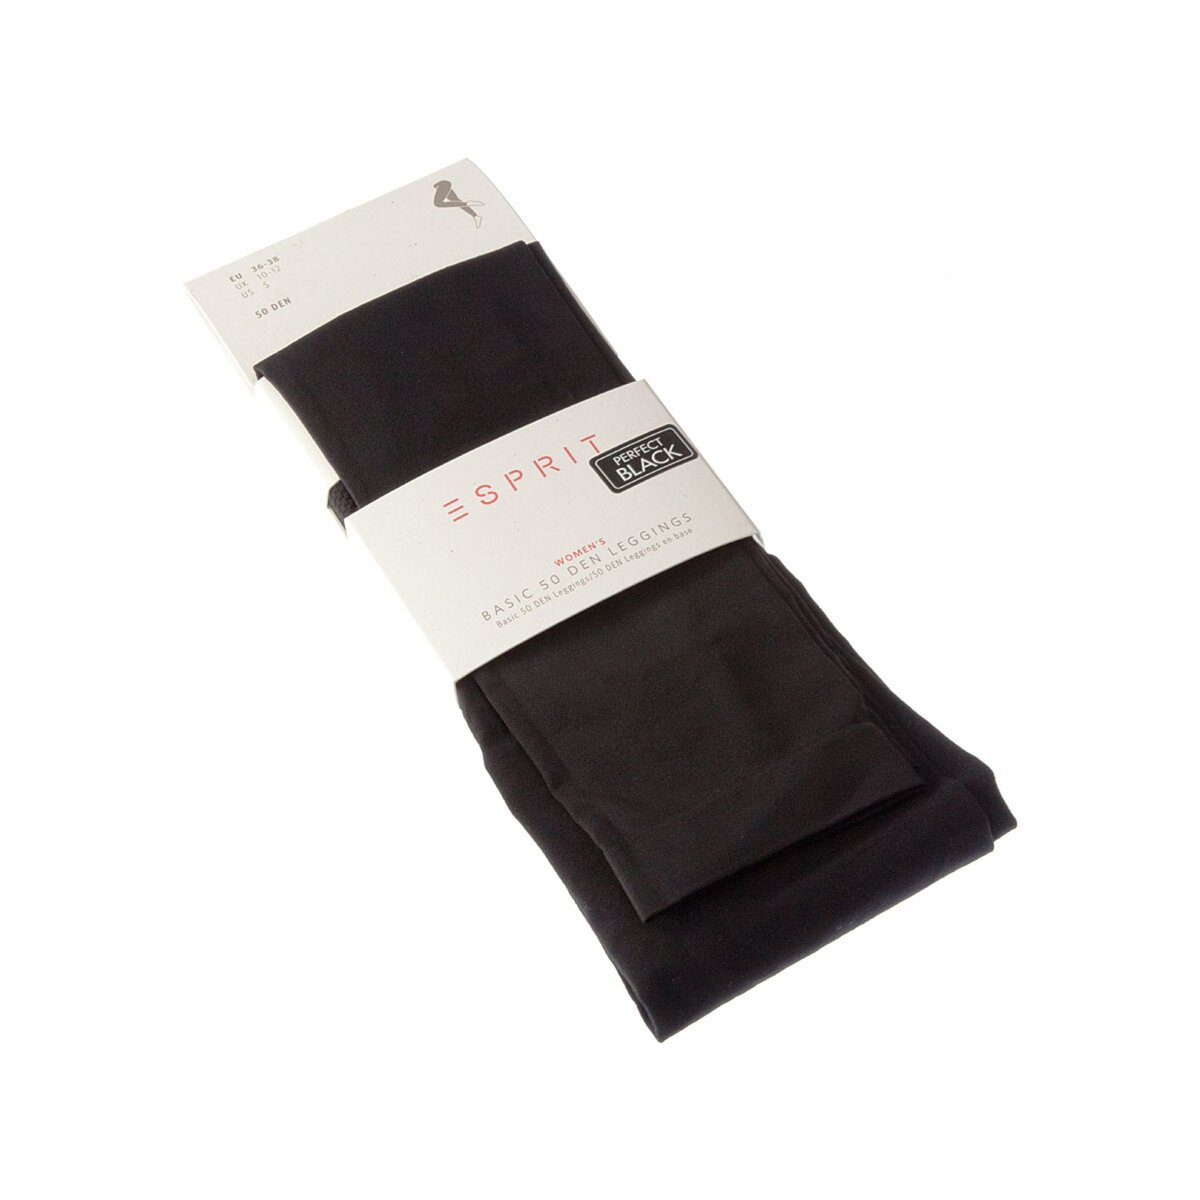 Esprit Legging chaud long - 1 paire - Unis - Opaque - Mat - Gousset coton